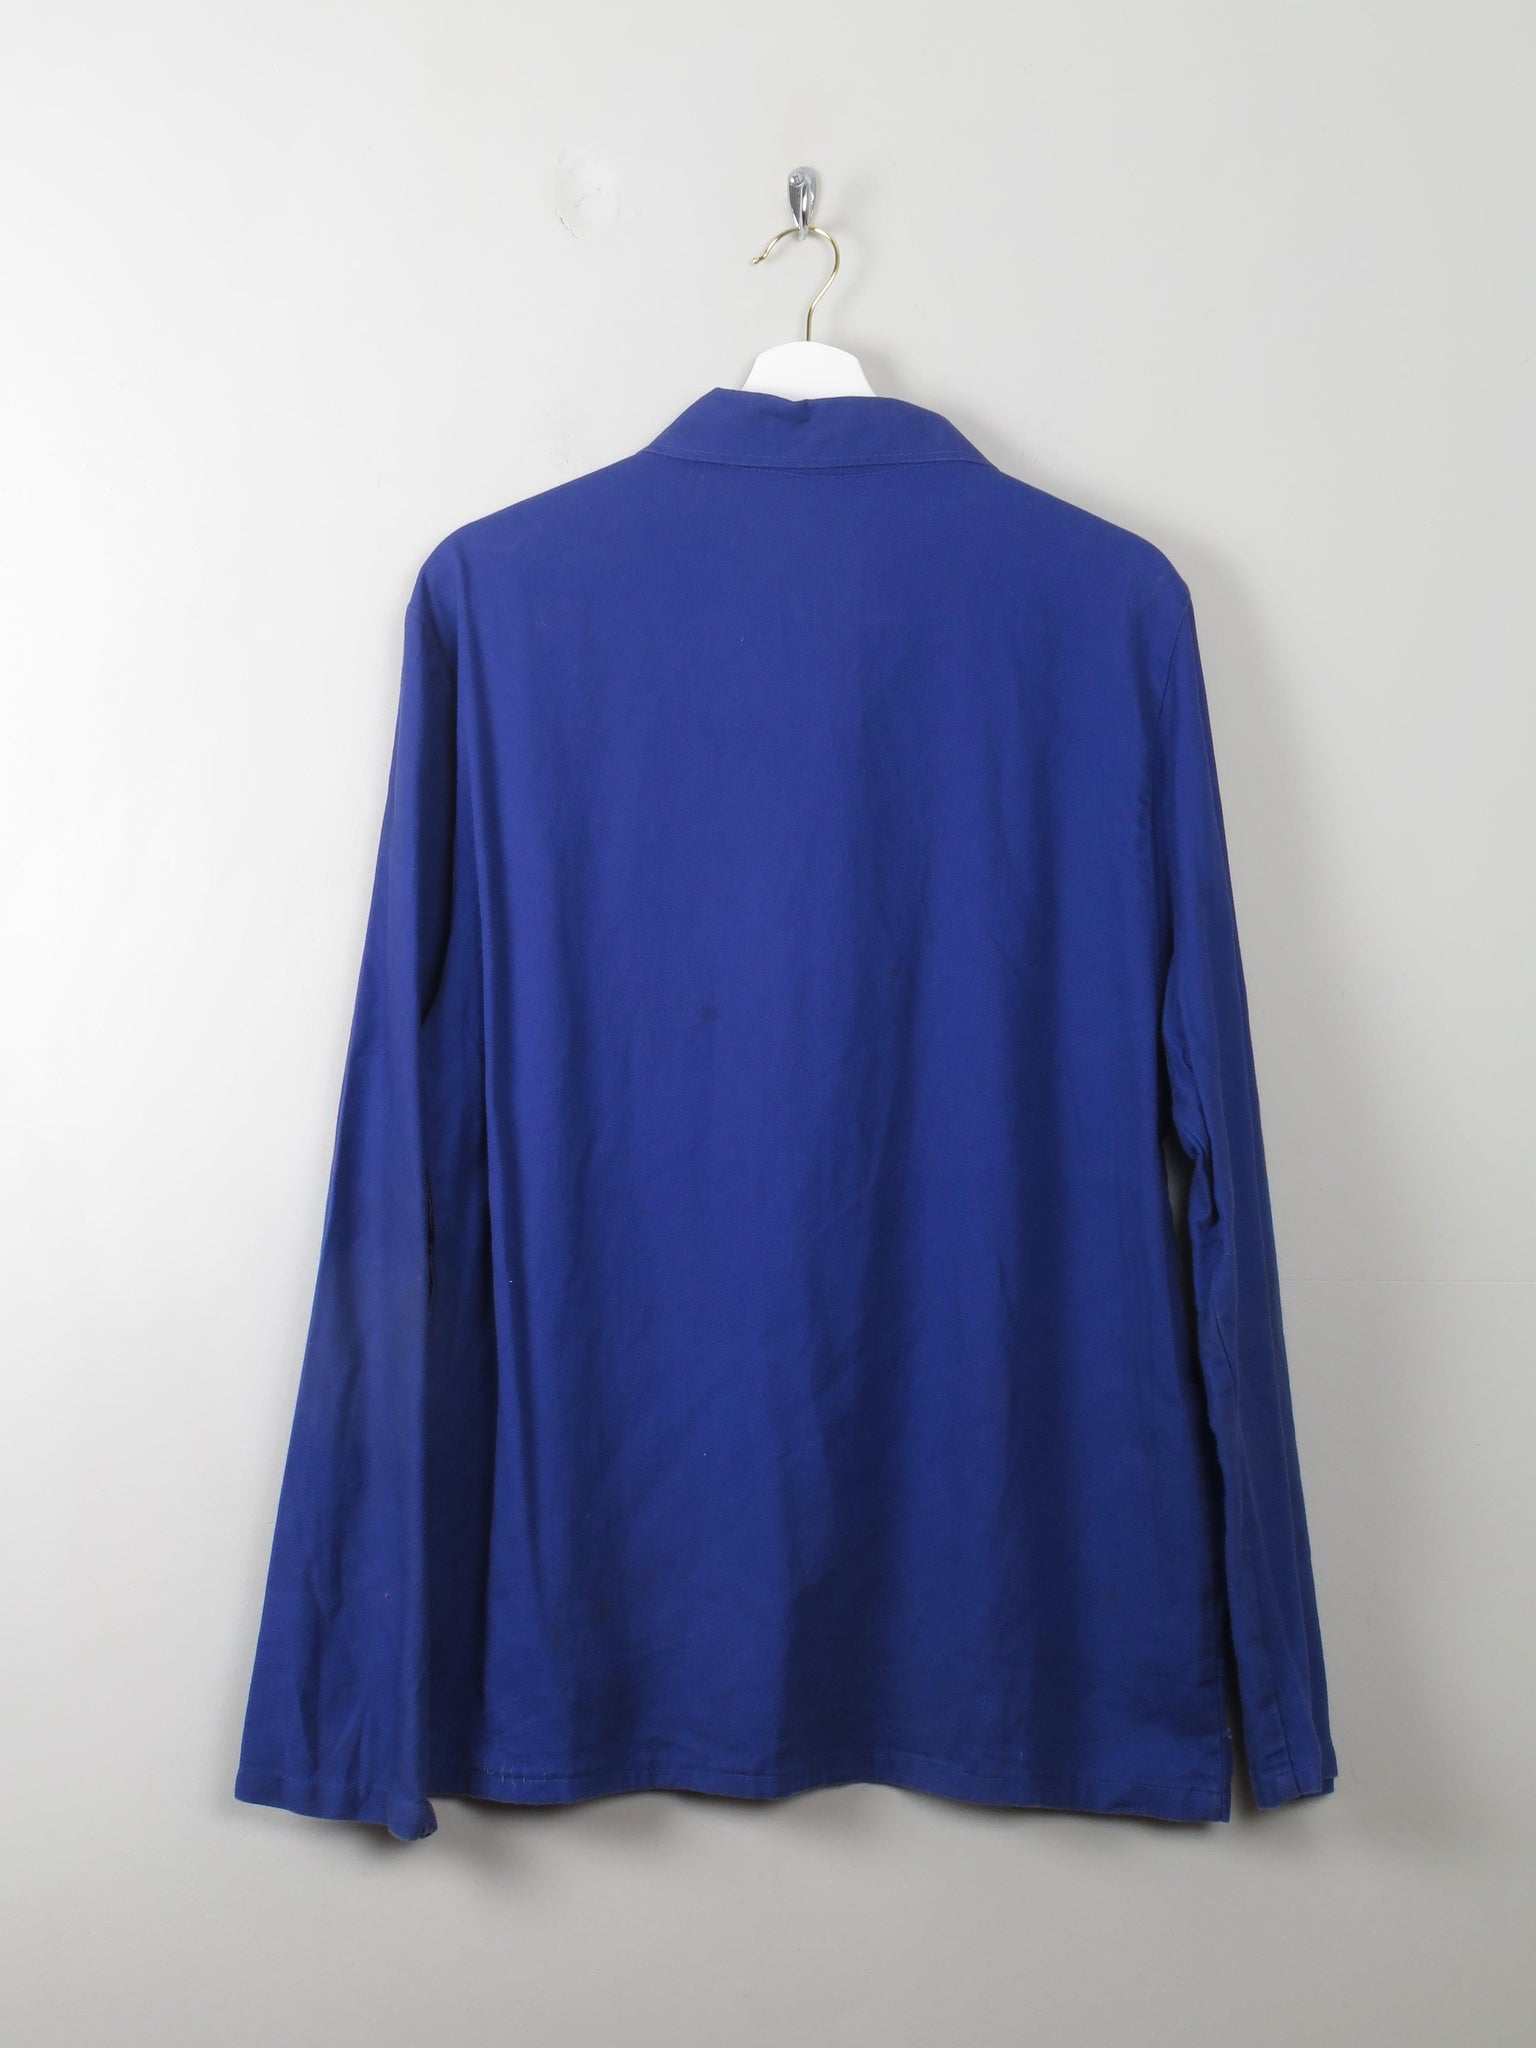 Men's Vintage Blue Work Jacket L - The Harlequin